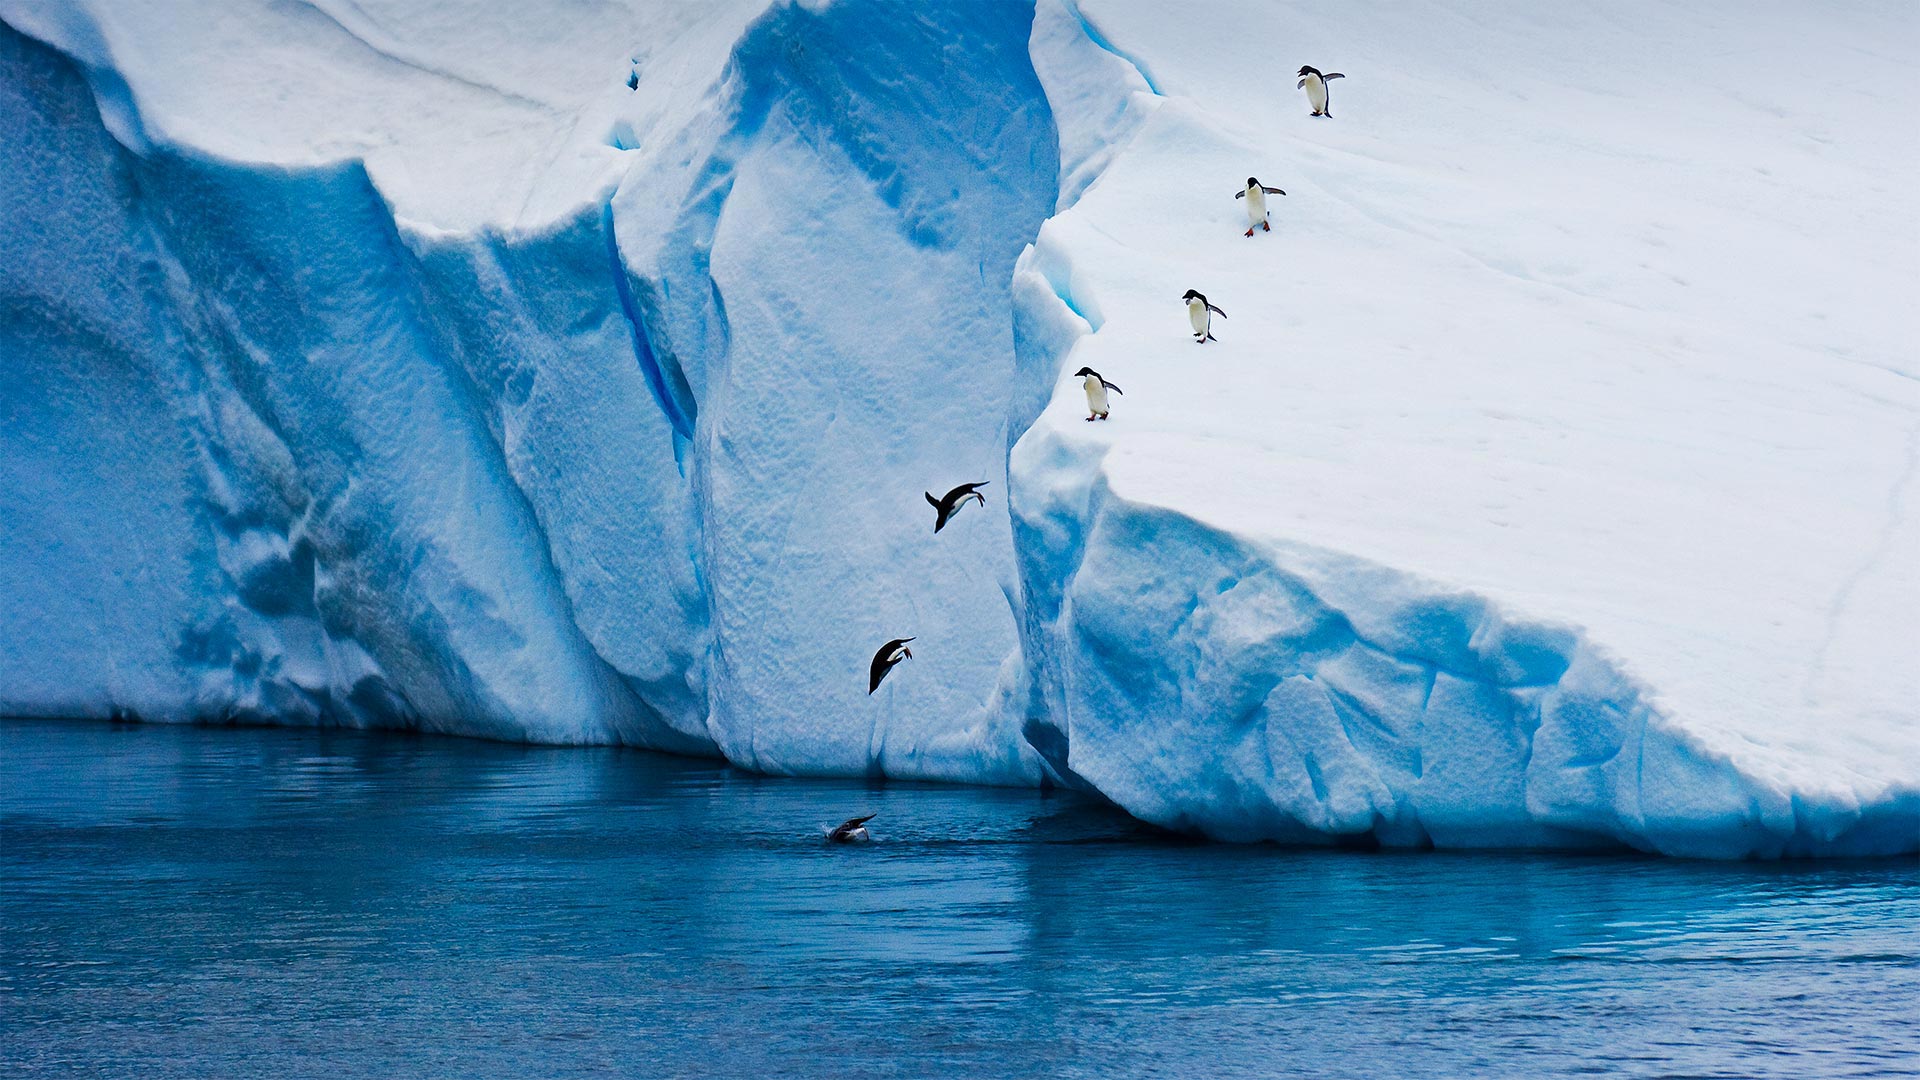 从冰山跃入水中的阿德利企鹅南极08mikehillgettyimages必应壁纸